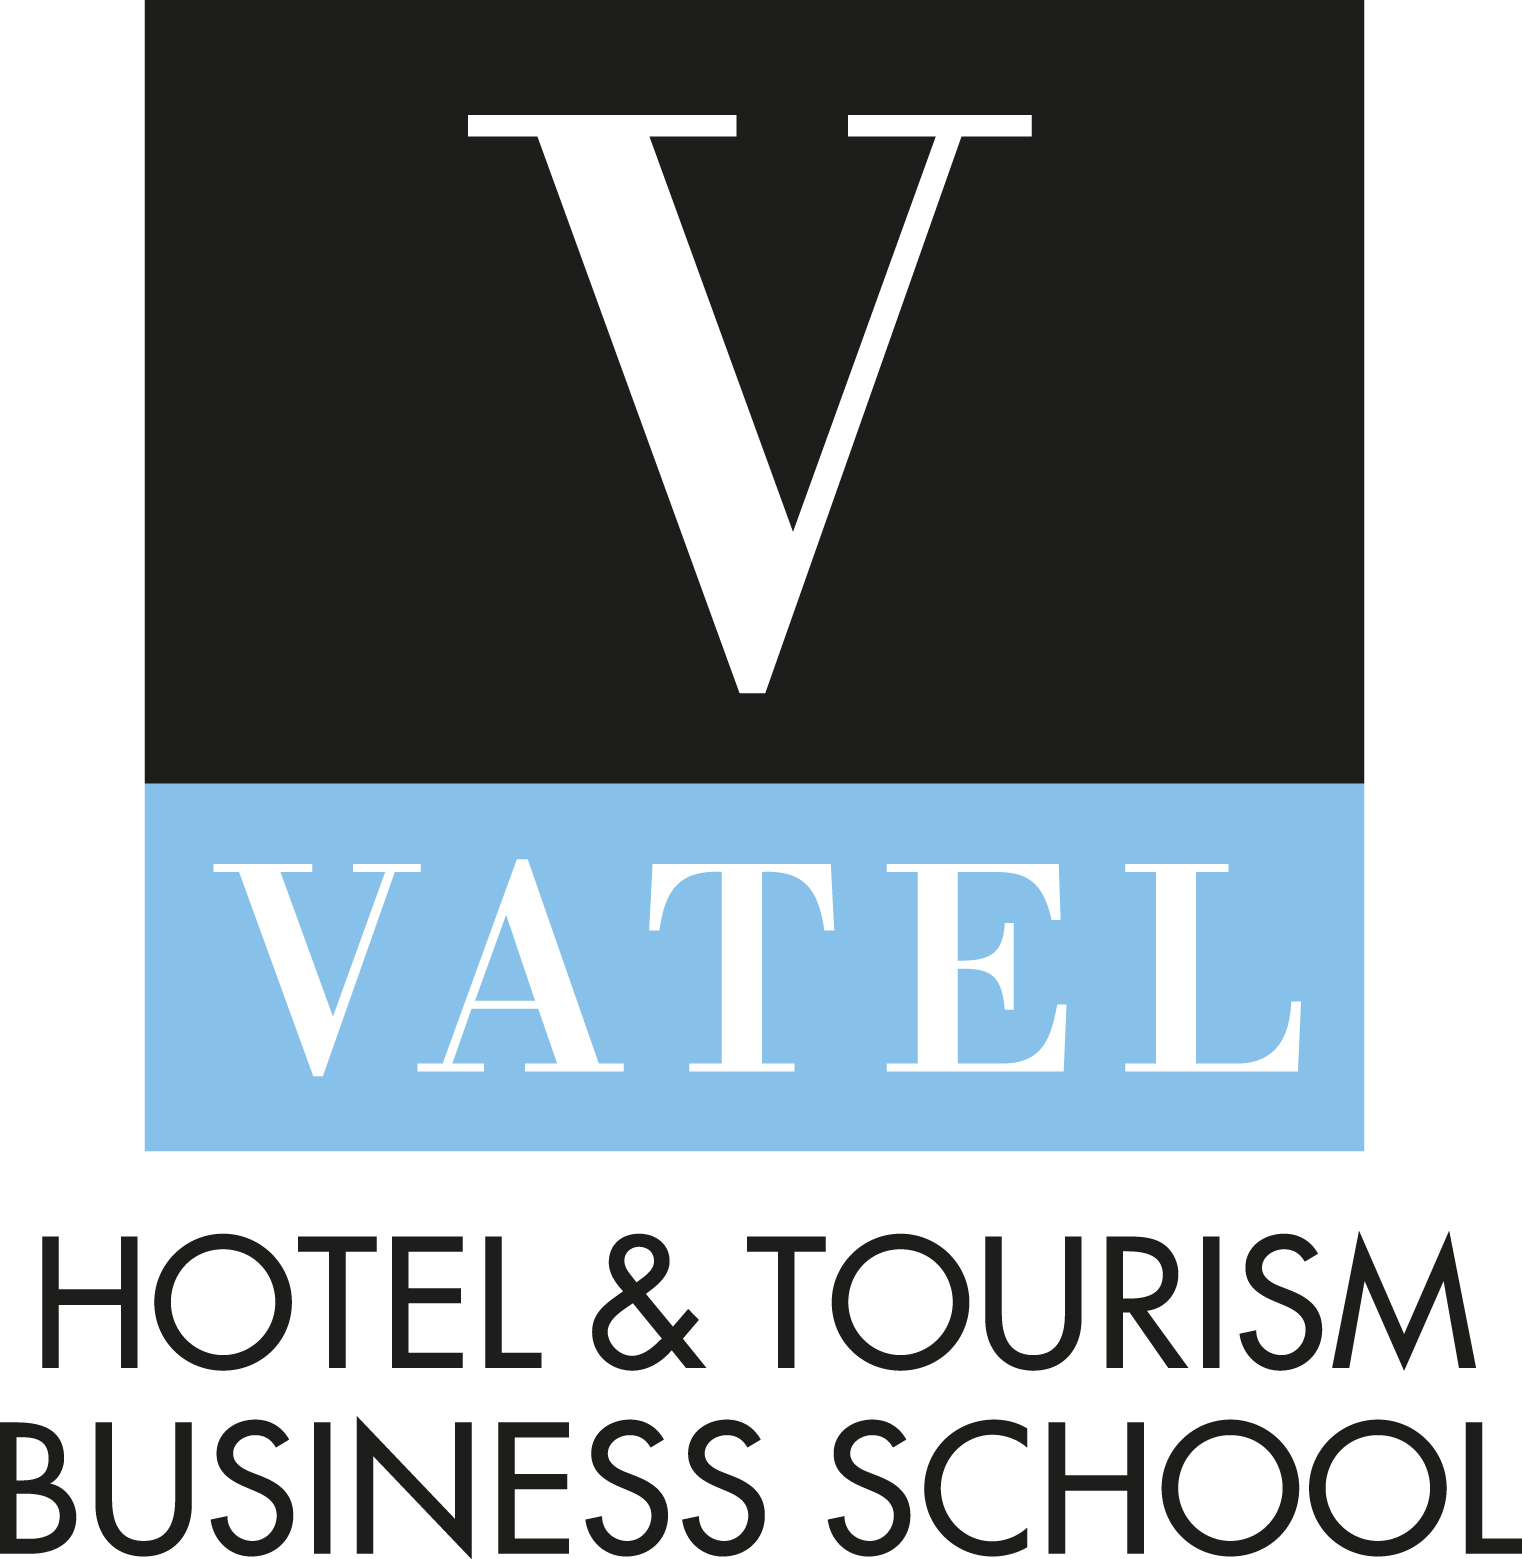 瓦岱勒國際酒店與旅遊管理學院蘇州校區